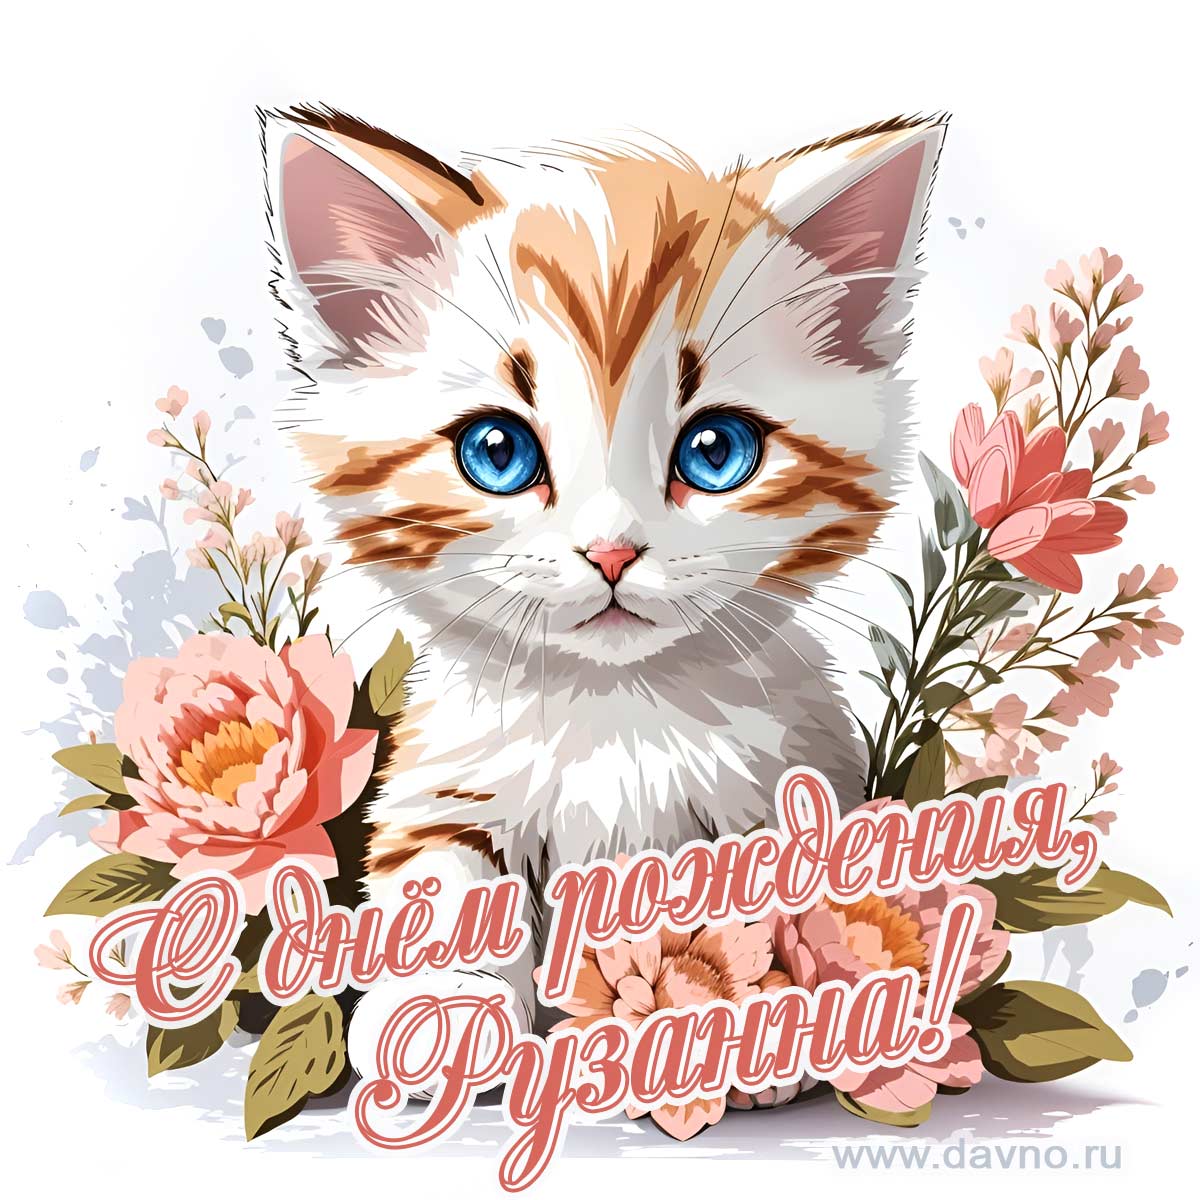 Новая рисованная поздравительная открытка для Рузанны с котёнком